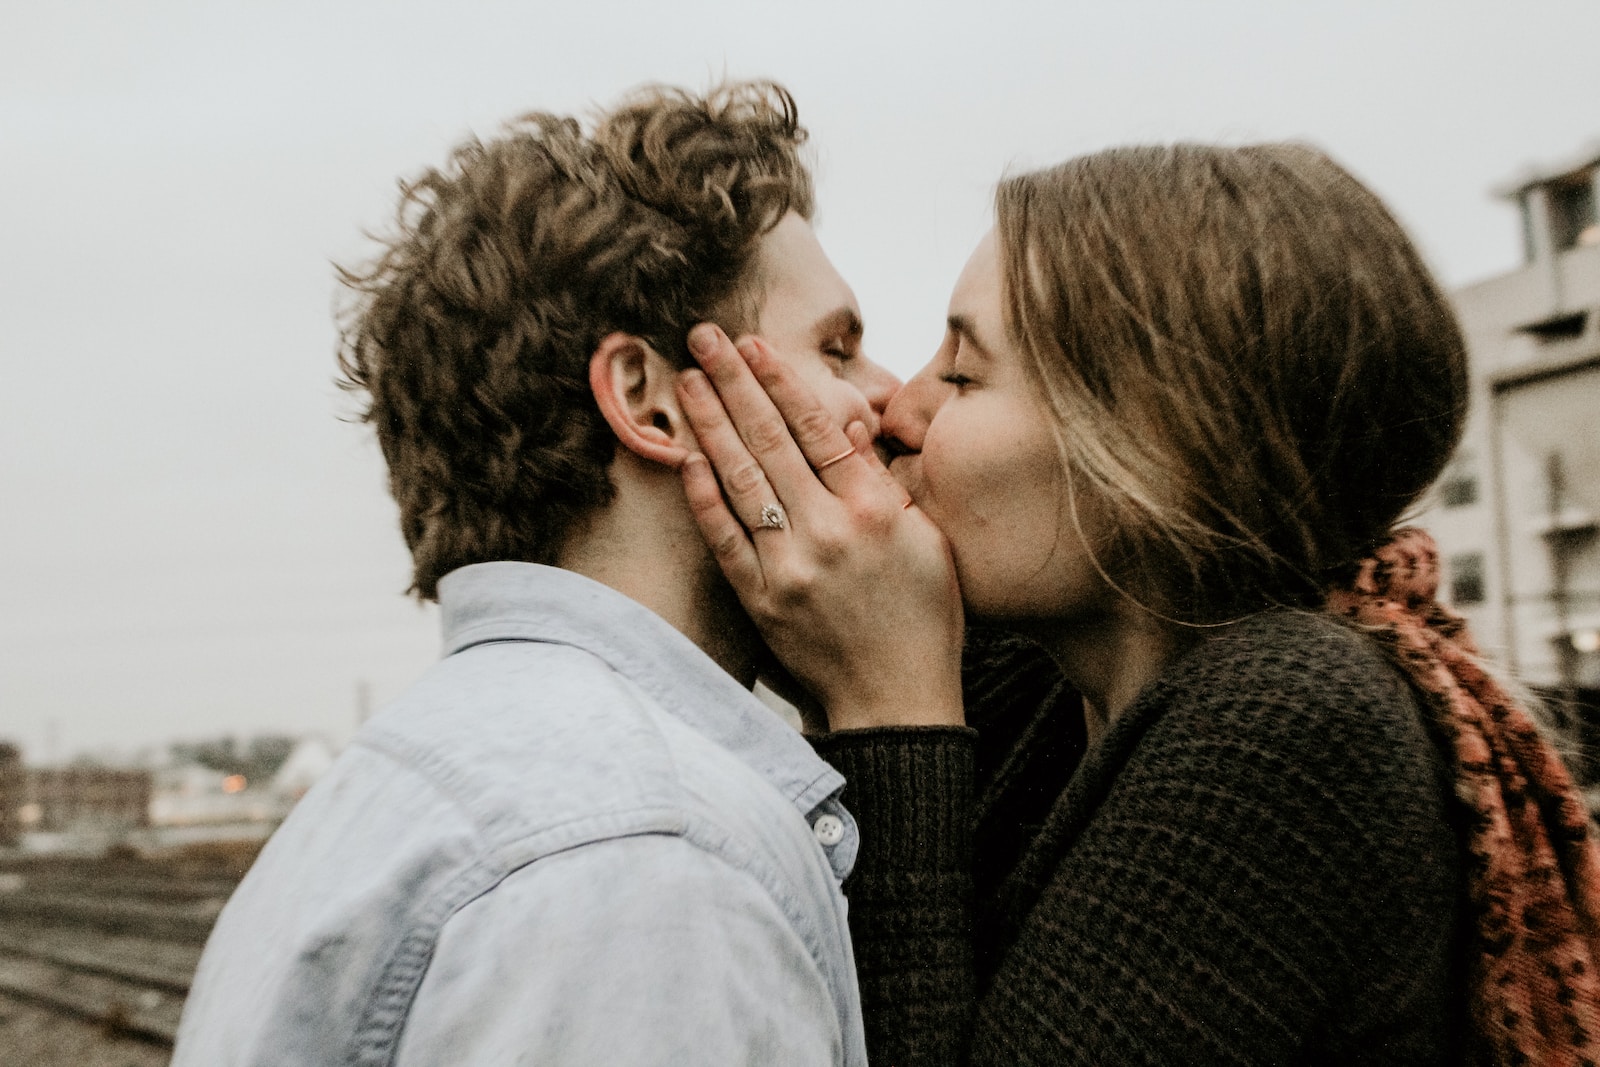 Ma petite amie refuse de m’embrasser, que dois-je faire ?